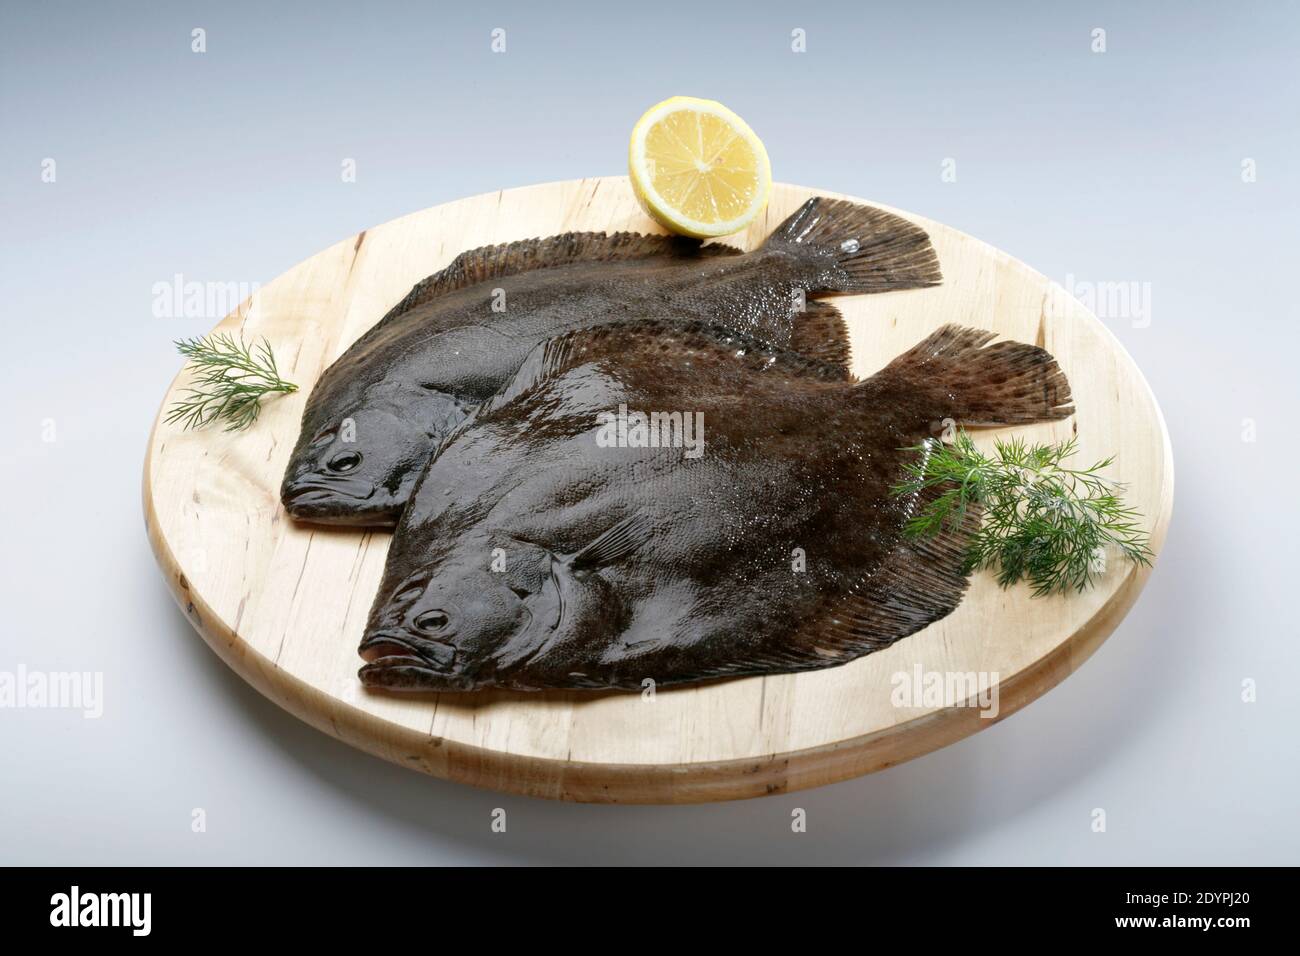 ryby na prkénku, platýz, ryby připravené k vaření Stock Photo